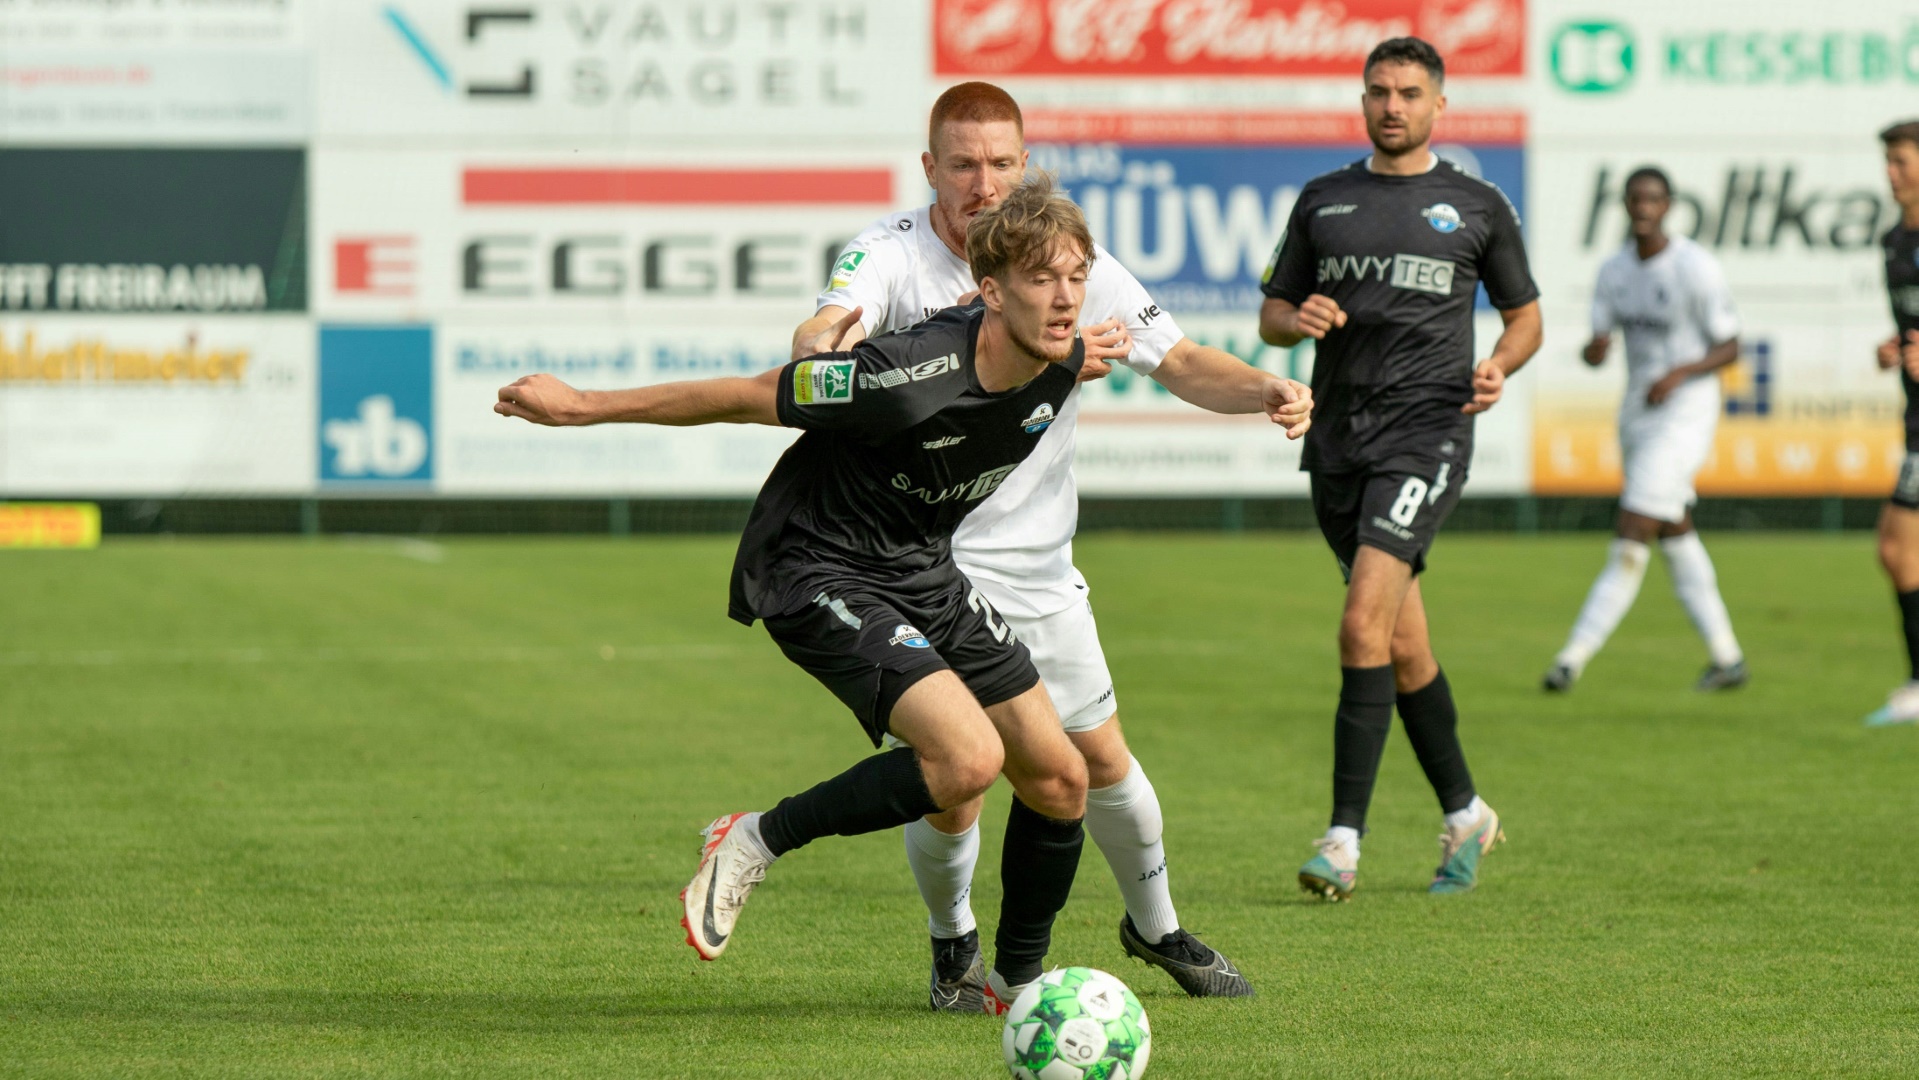 Gewohnte Heimat Regionalliga: Jascha Brandt